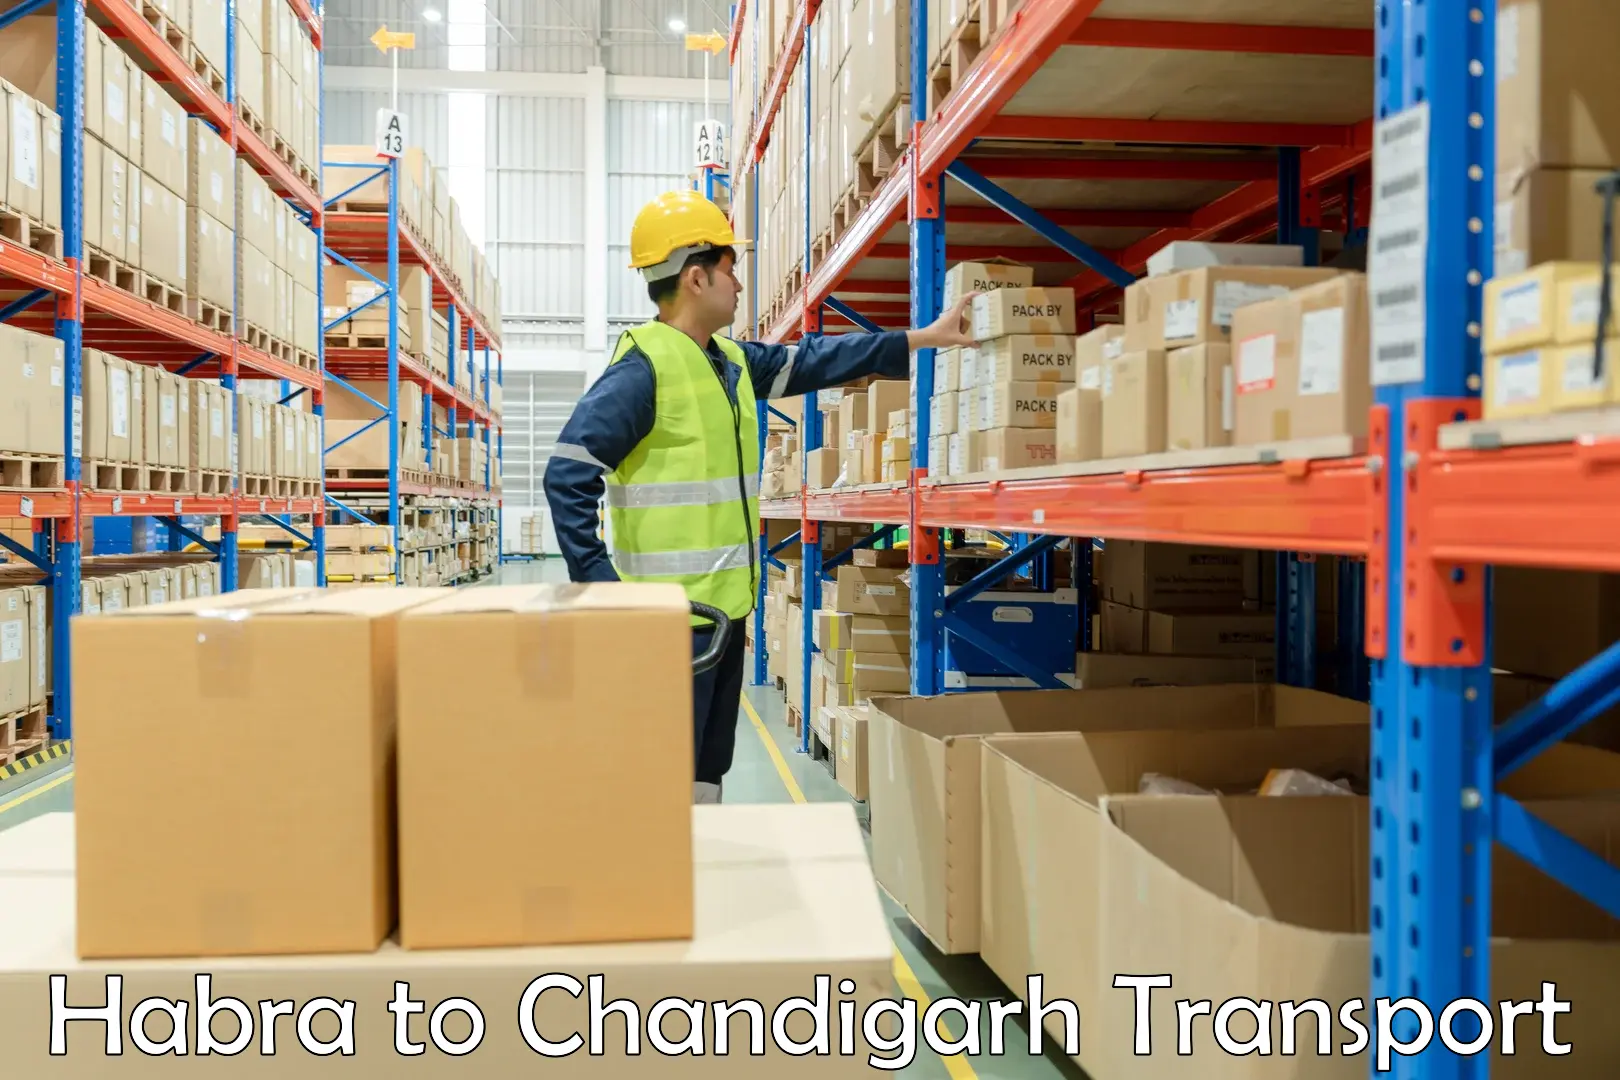 Furniture transport service Habra to Chandigarh